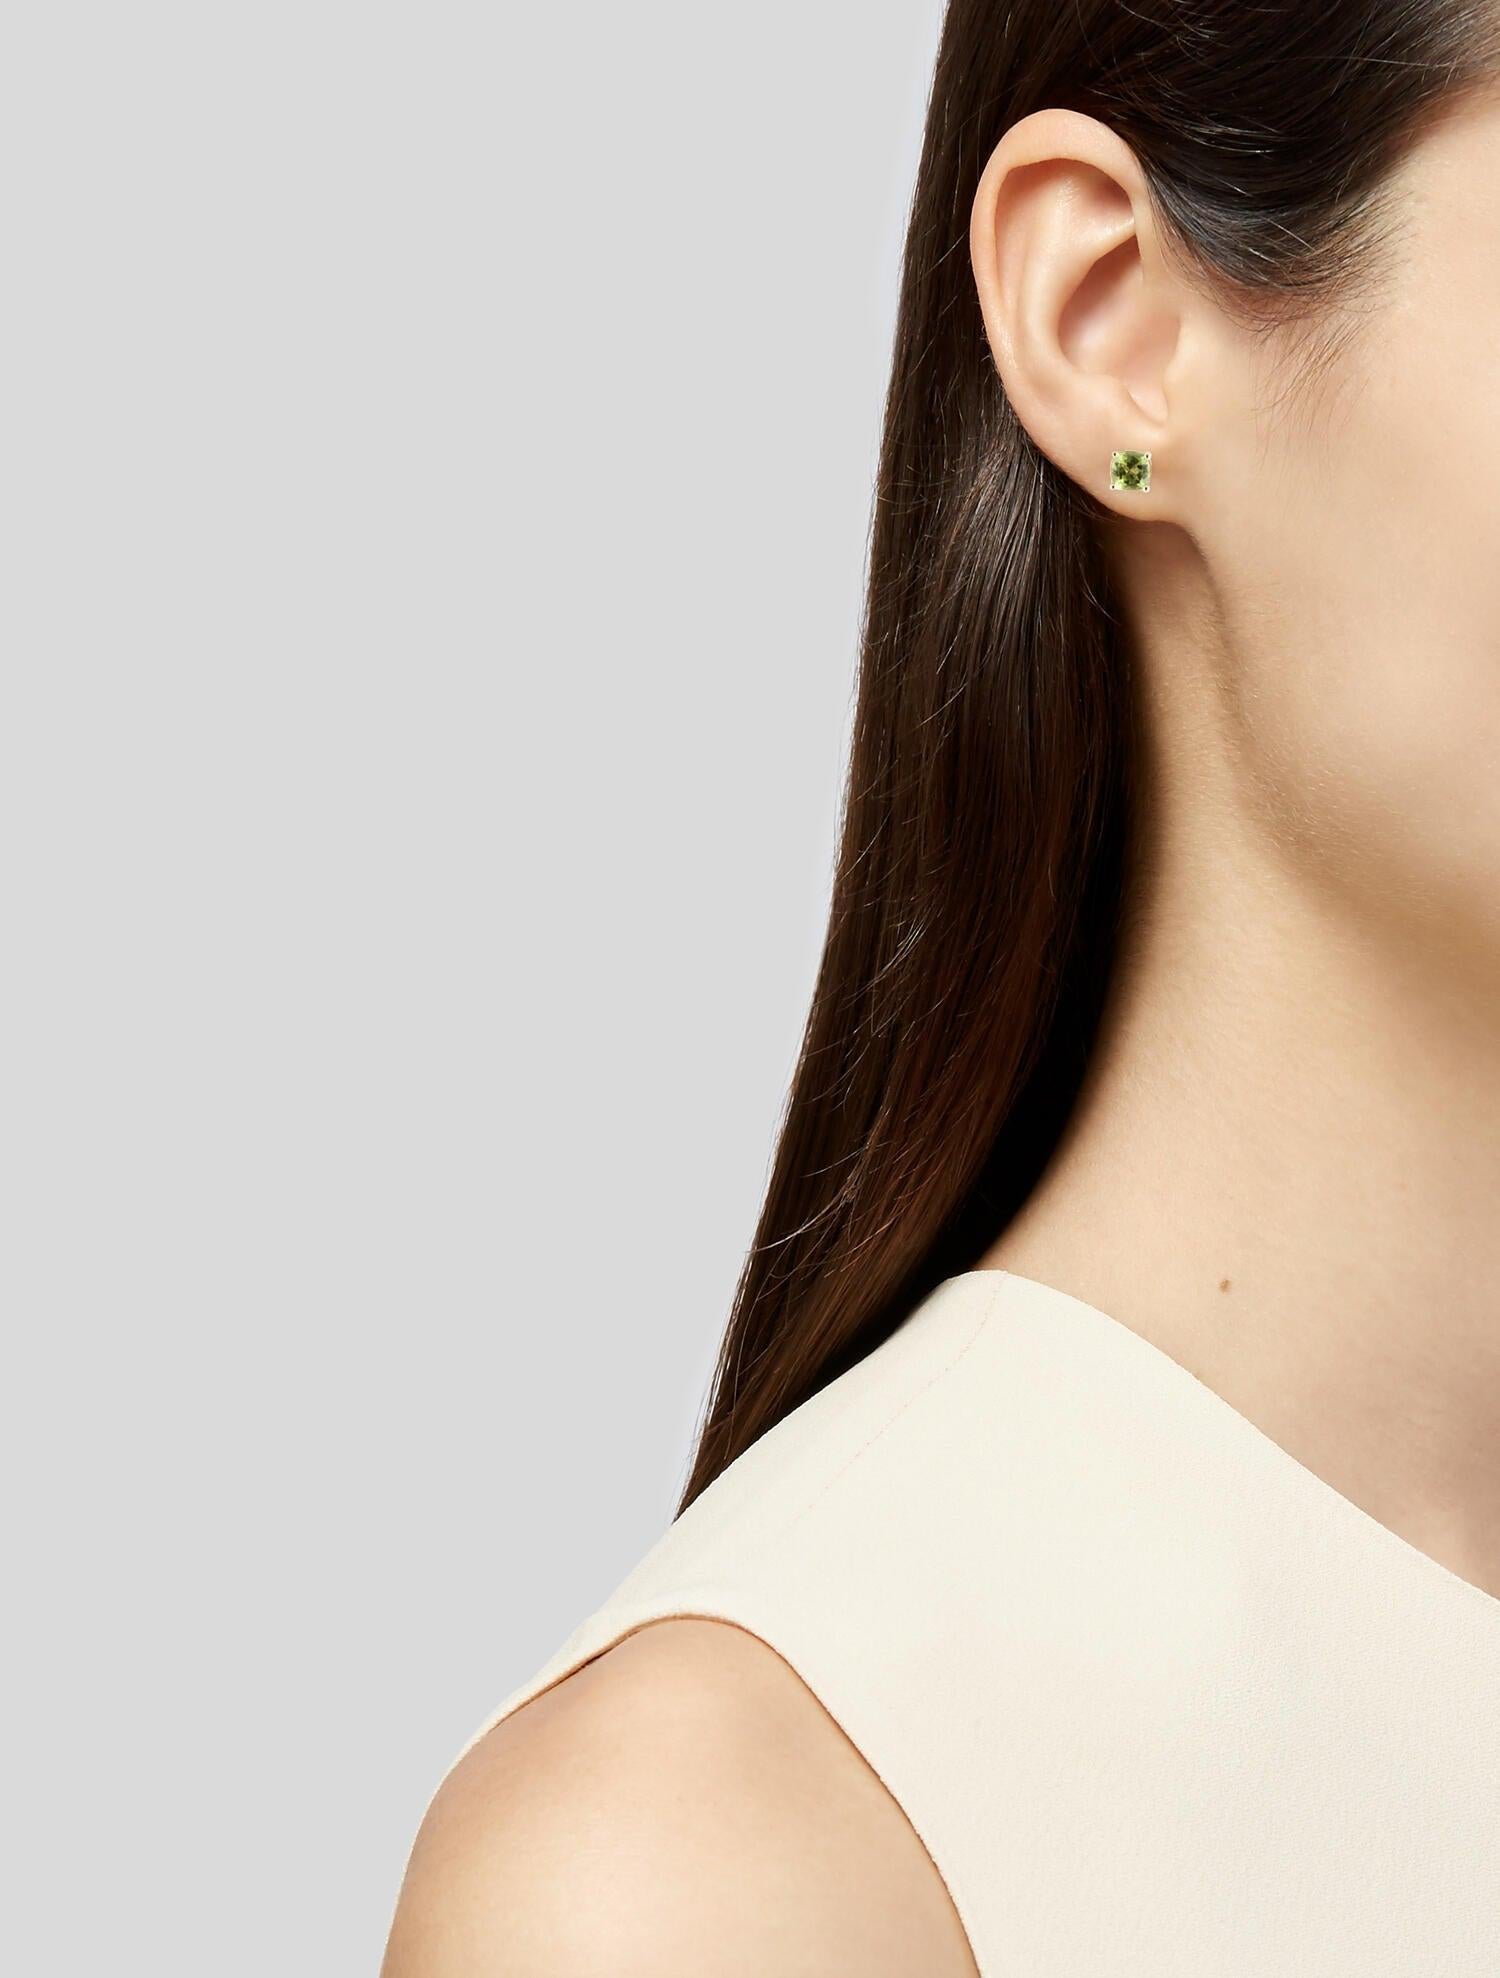 Chic 14K 2.02ctw Peridot Stud Earrings - Elegant Gemstone Jewelry Piece For Sale 1